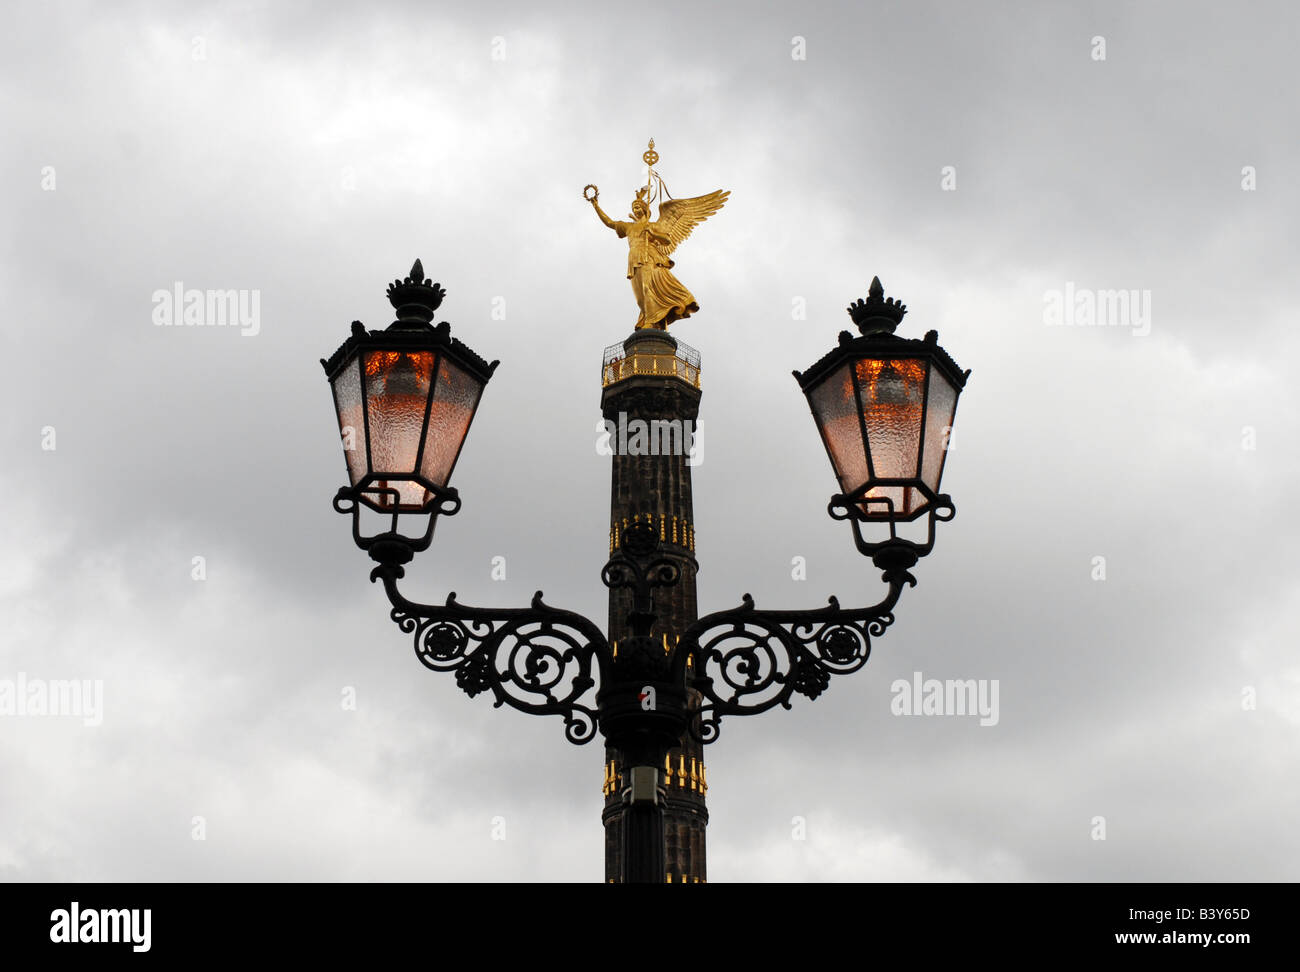 Berlin Victory Column Siegessule Behind Roadsigns For